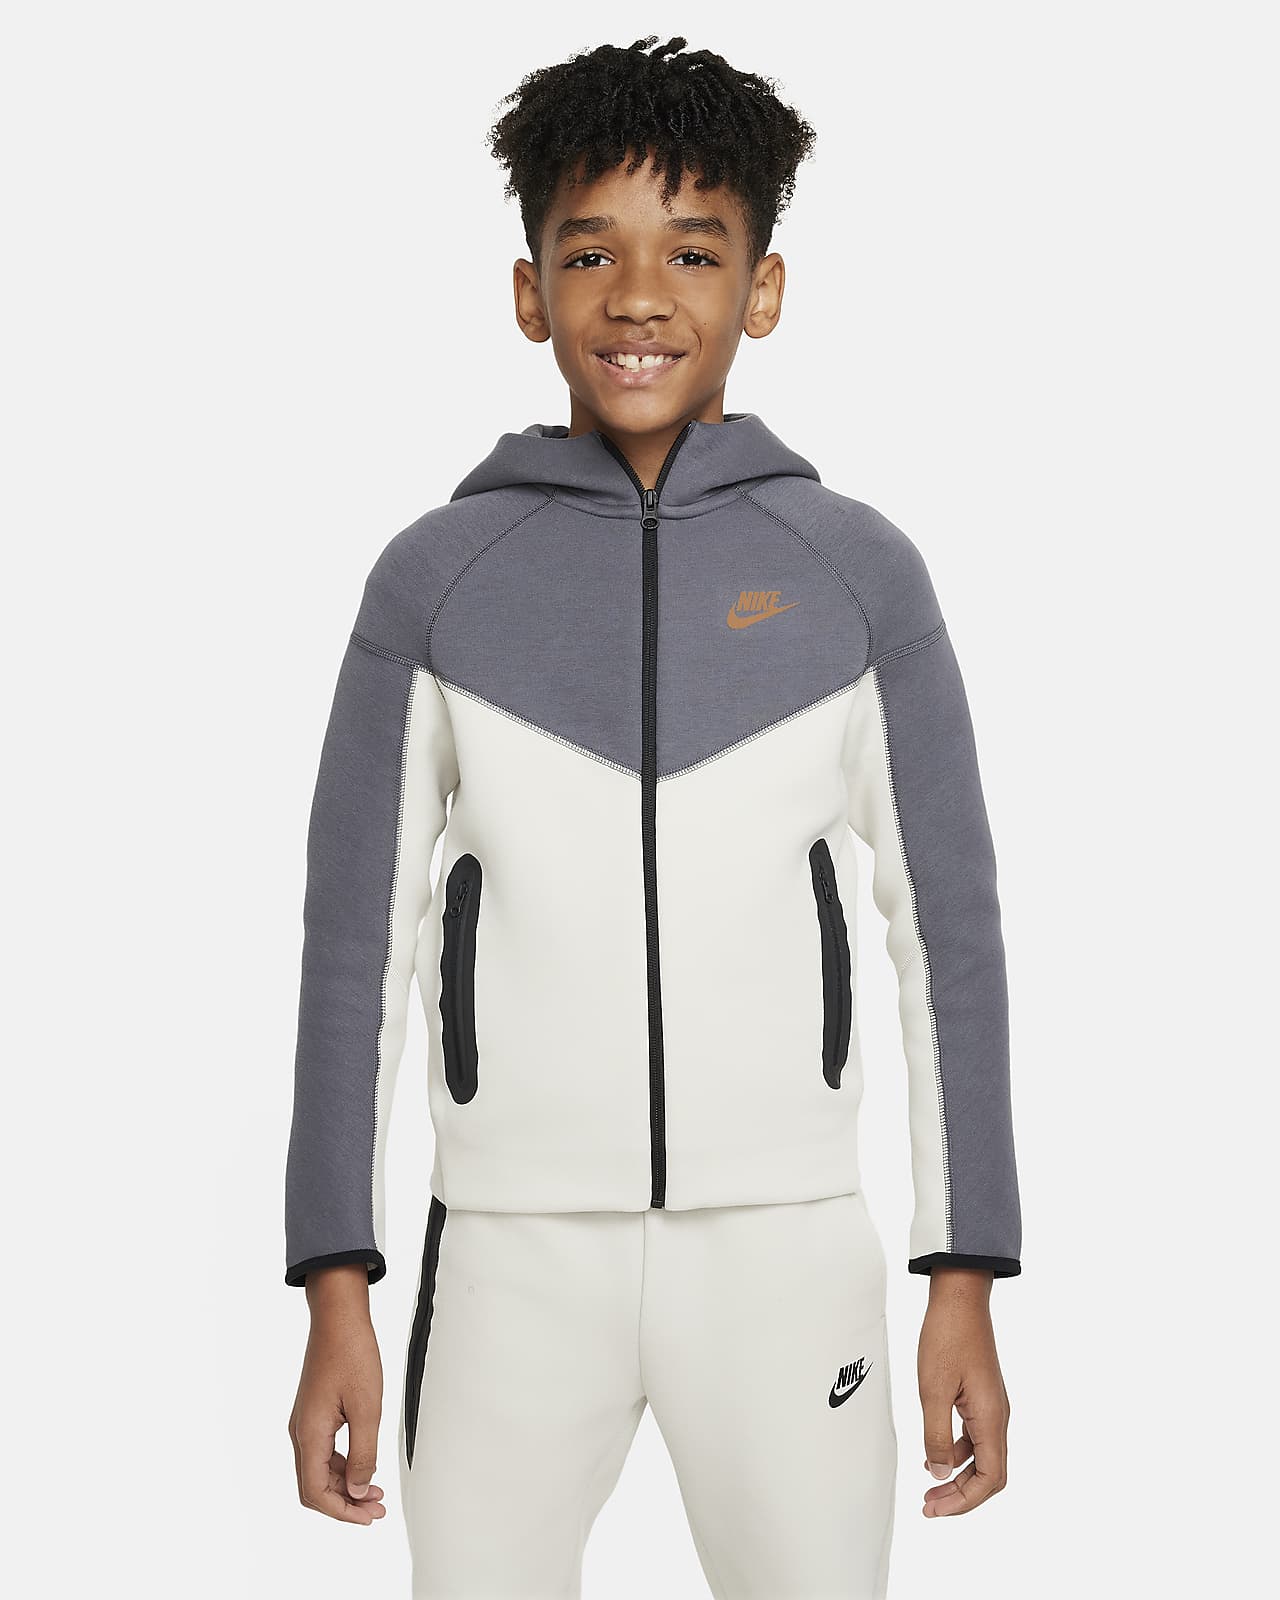 Μπλούζα με κουκούλα και φερμουάρ σε όλο το μήκος Nike Sportswear Tech Fleece για μεγάλα αγόρια